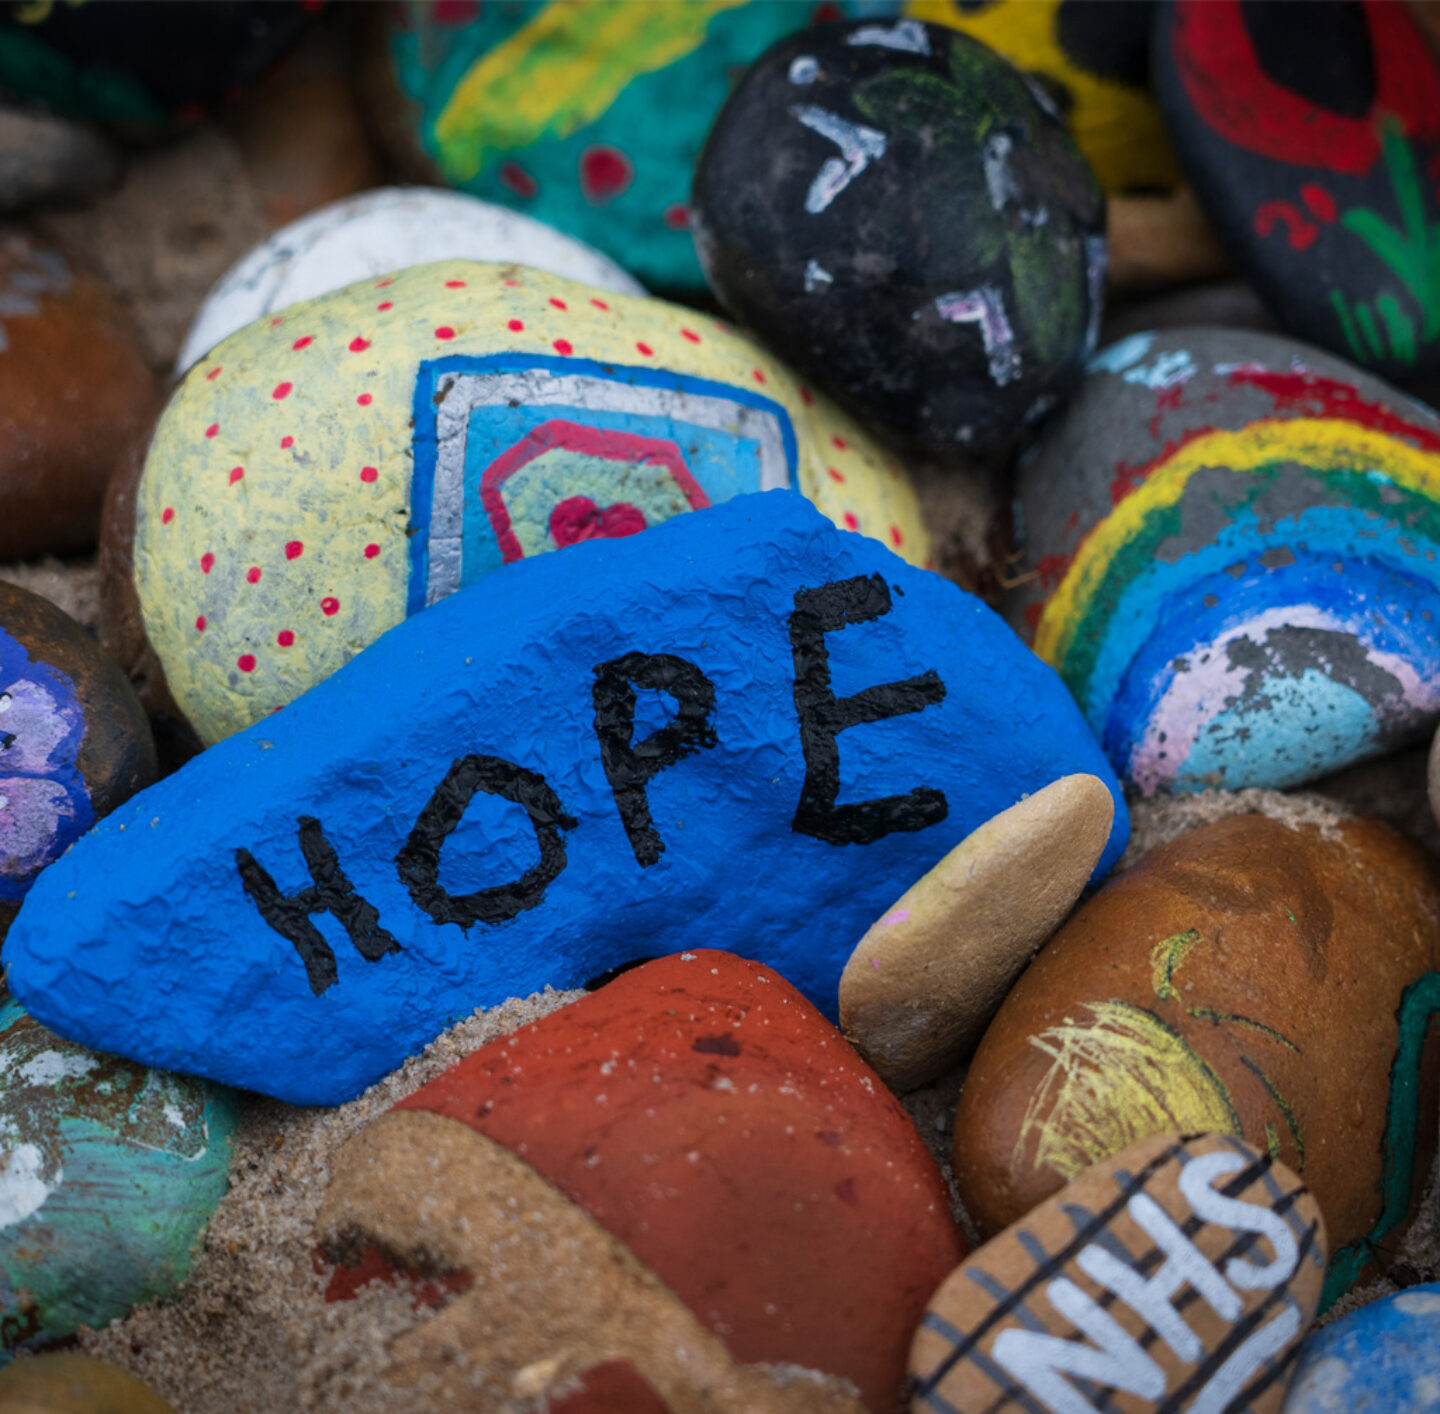 Hoffnung - ein Stein trägt die Aufschrift "Hope"